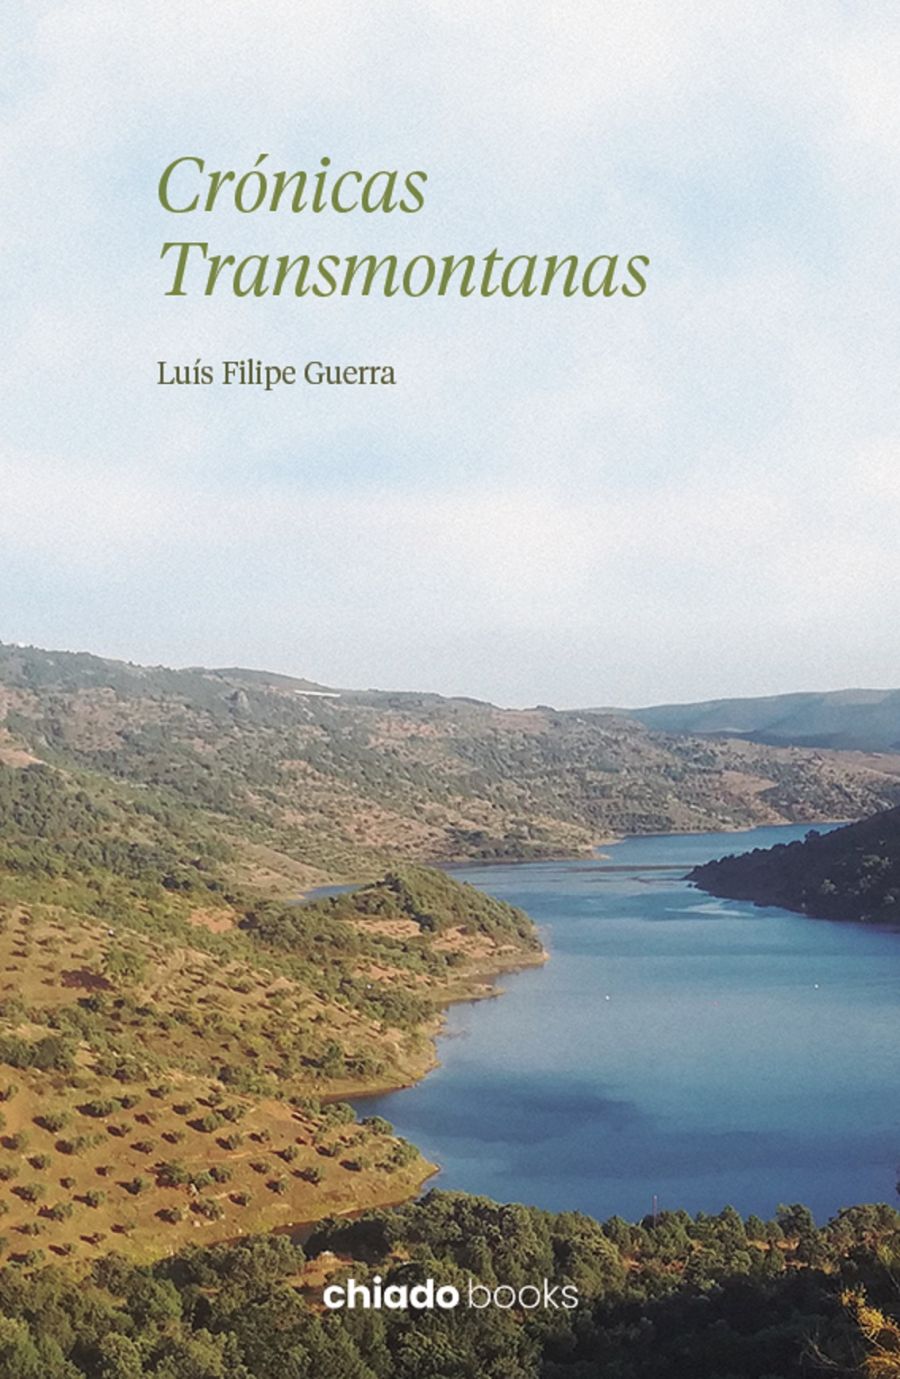 Apresentação do Livro 'Crónicas Transmontanas' de Luís Filipe Guerra